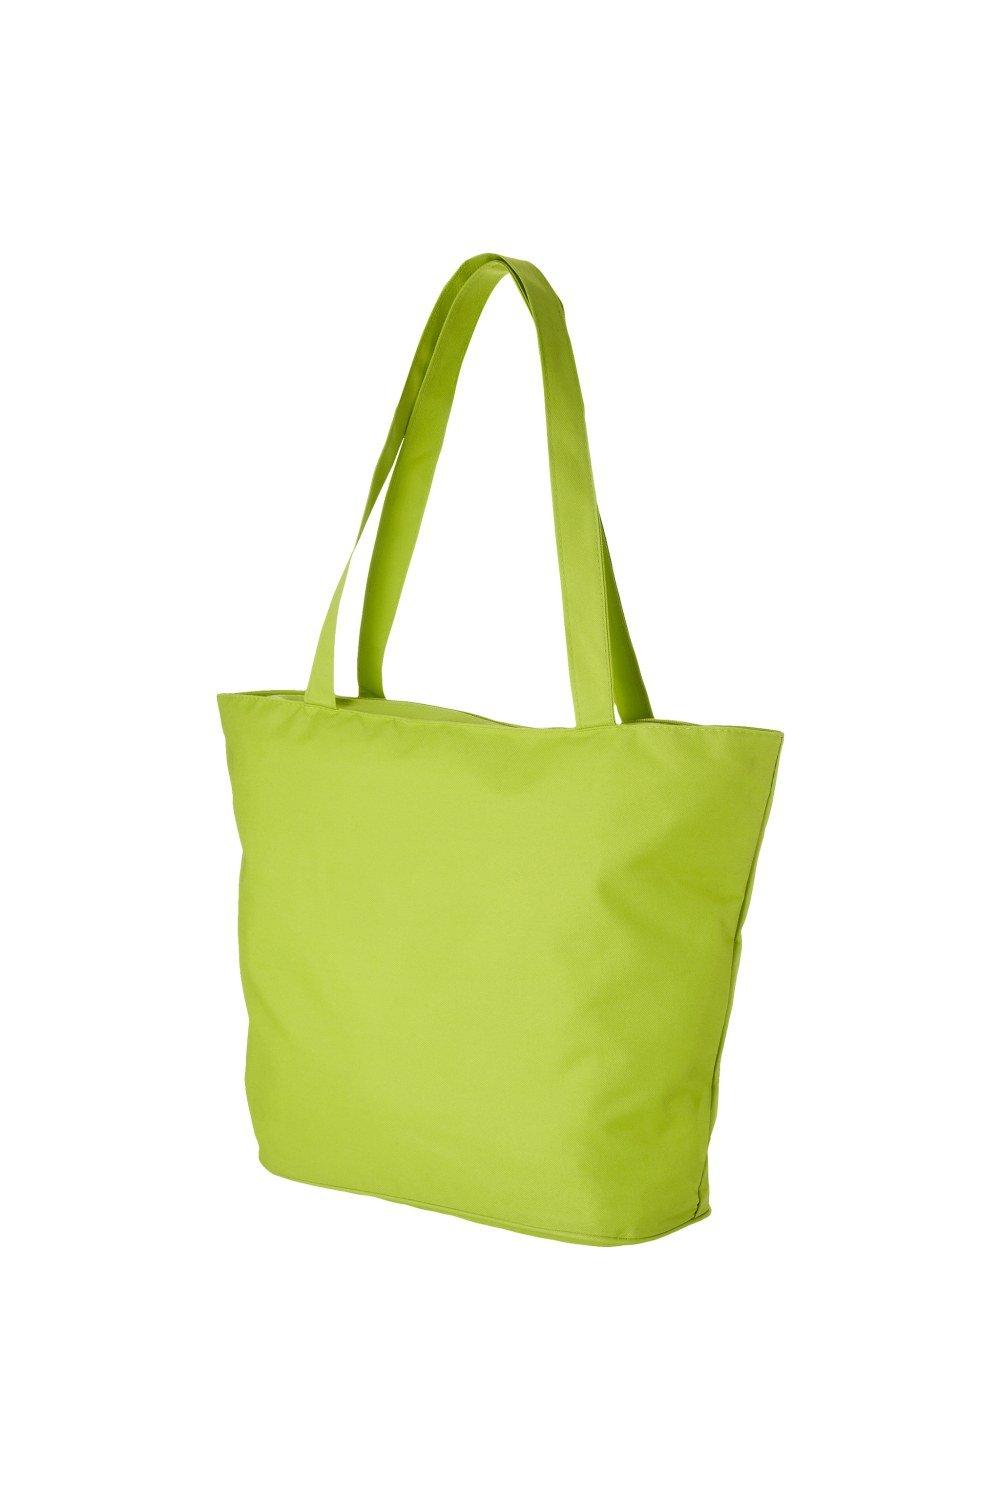 Пляжная сумка-тоут Panama (2 шт.) Bullet, зеленый